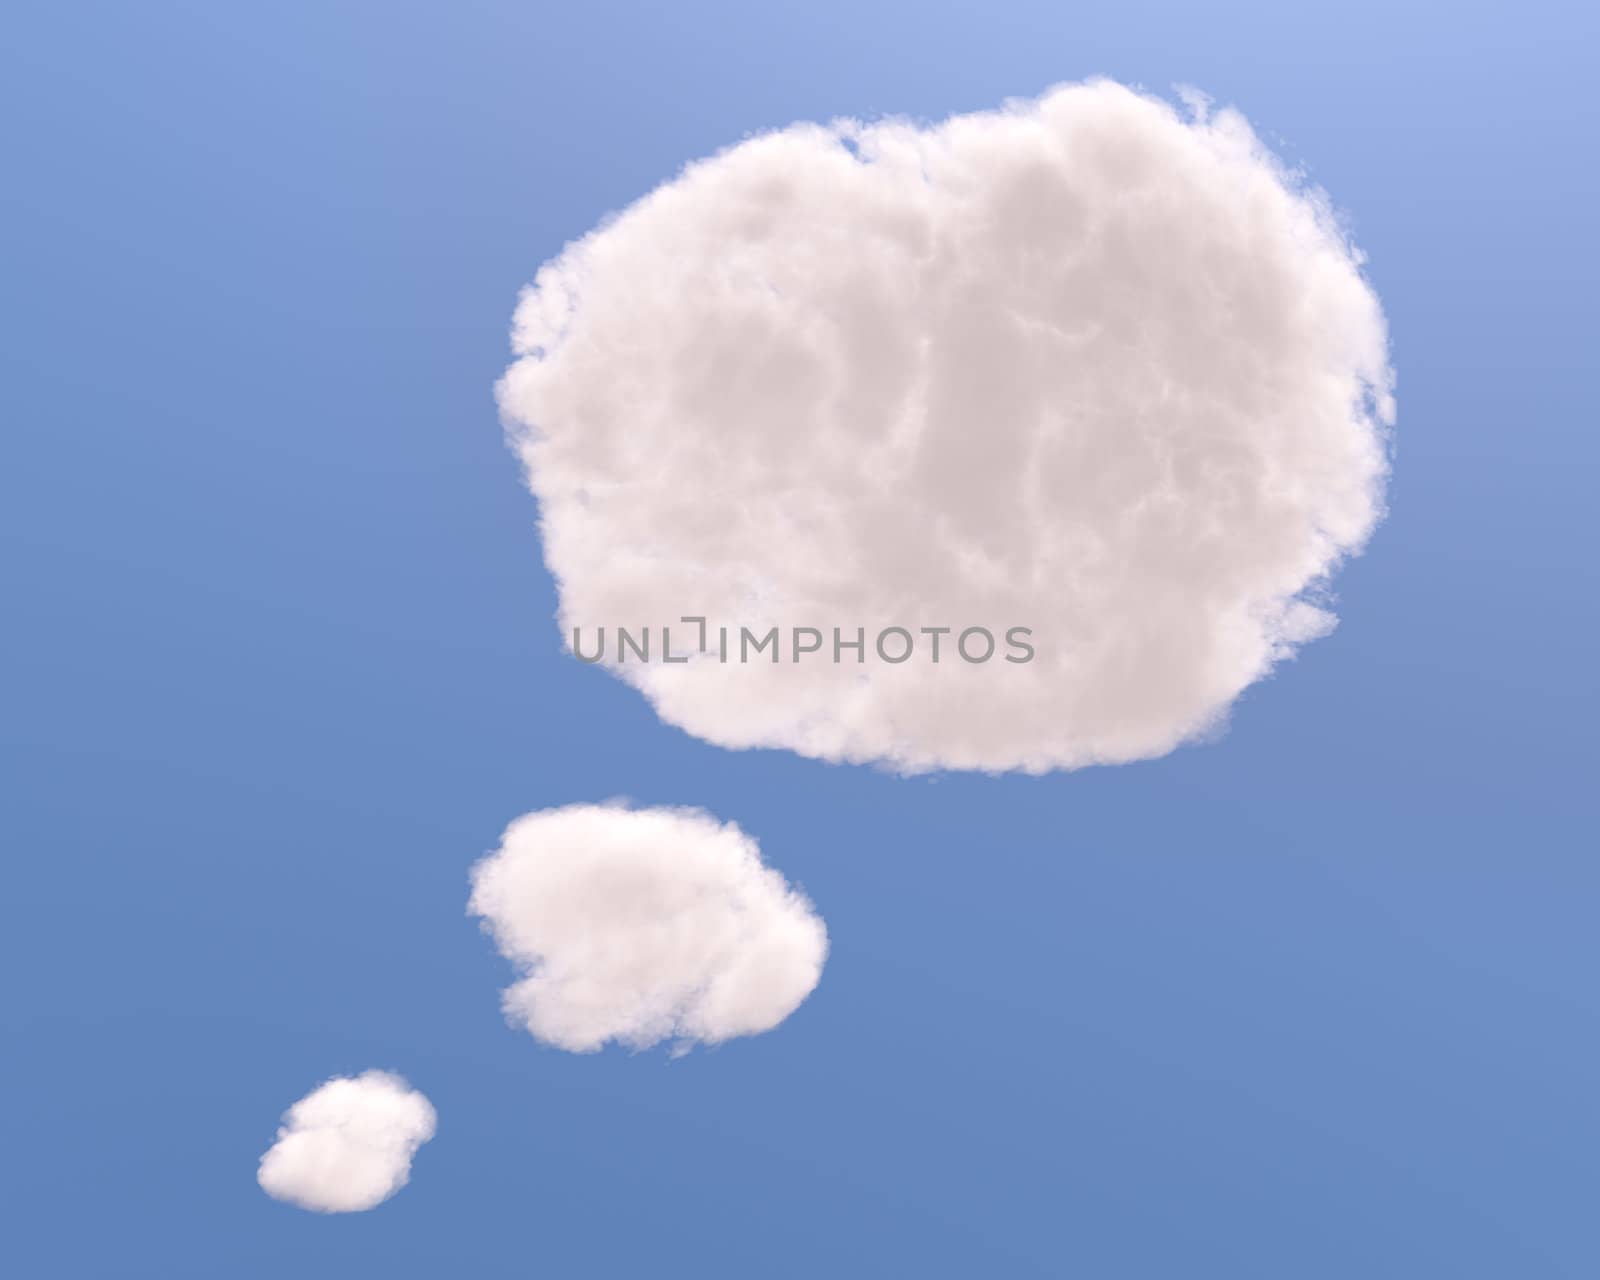 Text bubble cloud shape by Zelfit